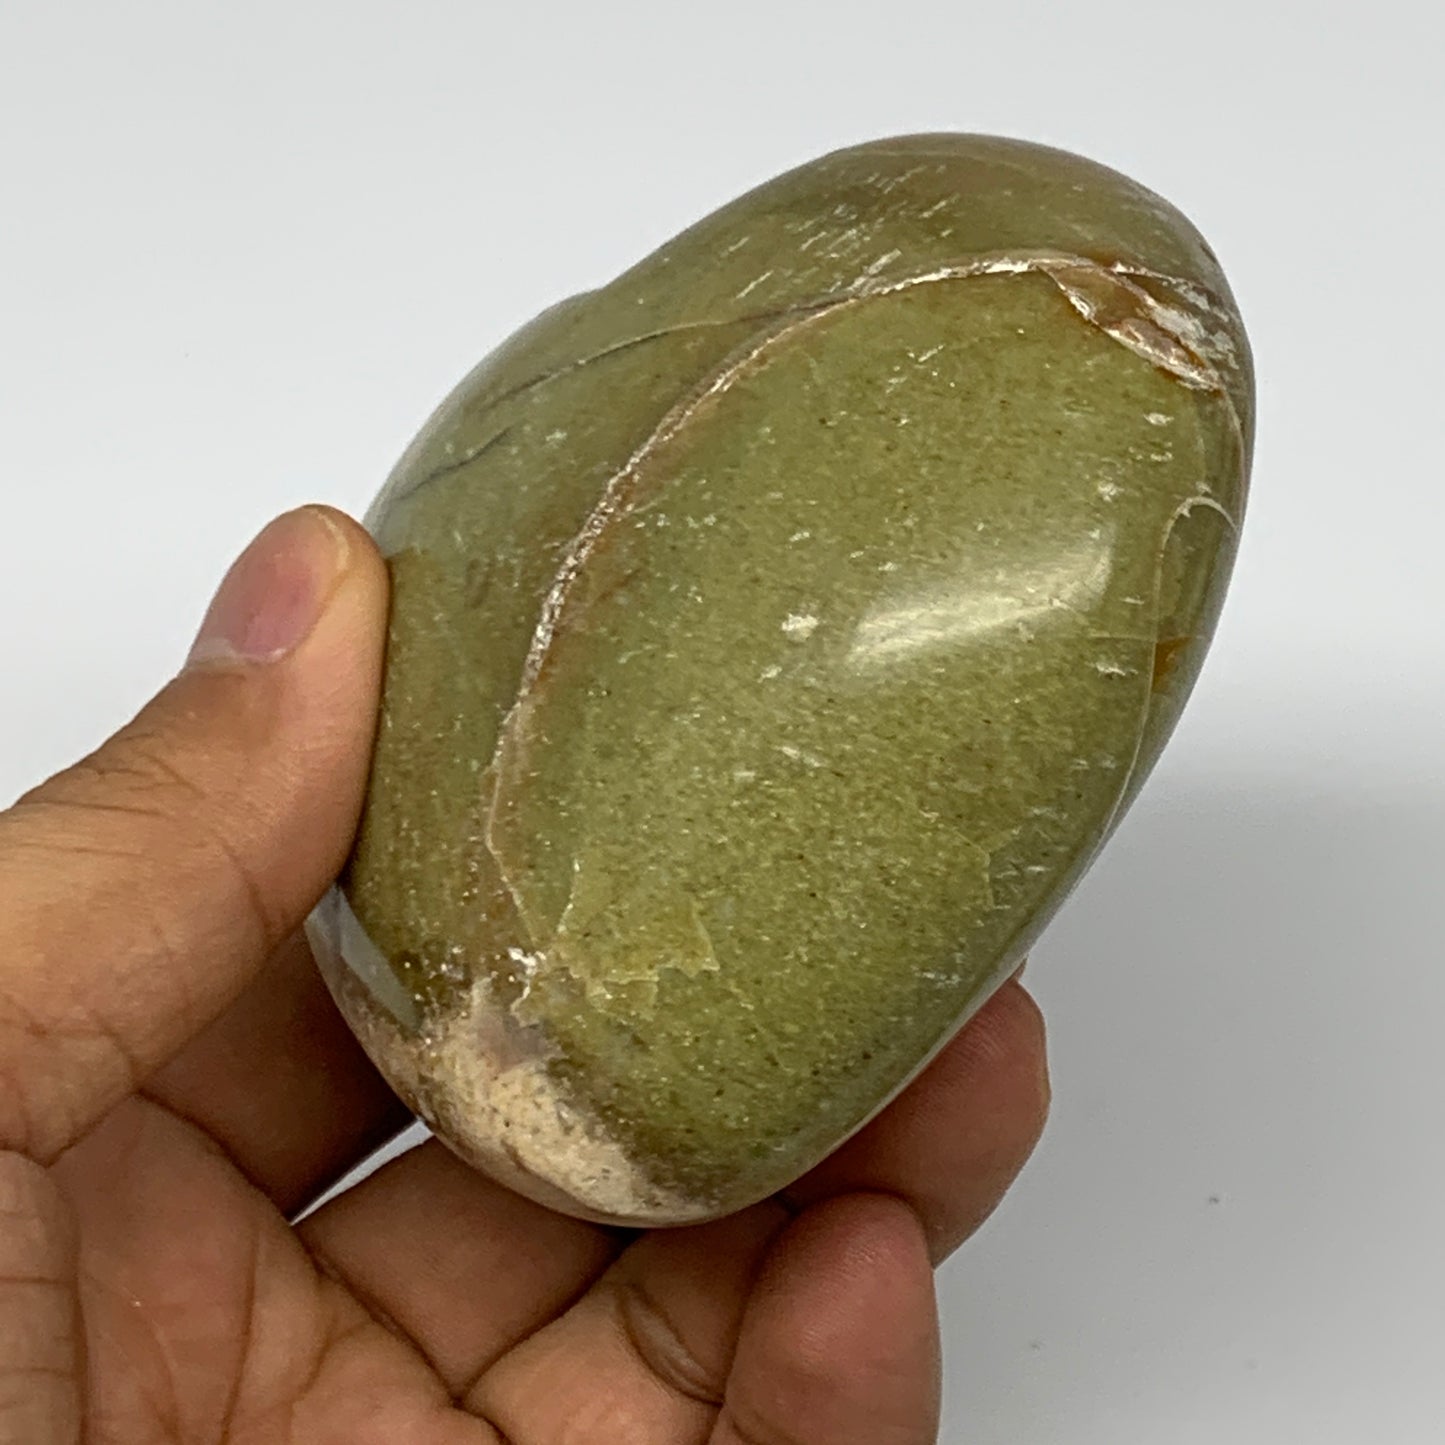 257.8g,2.9"x3.4"x1.6", Green Opal Heart Polished Gemstone @Madagascar, B17570